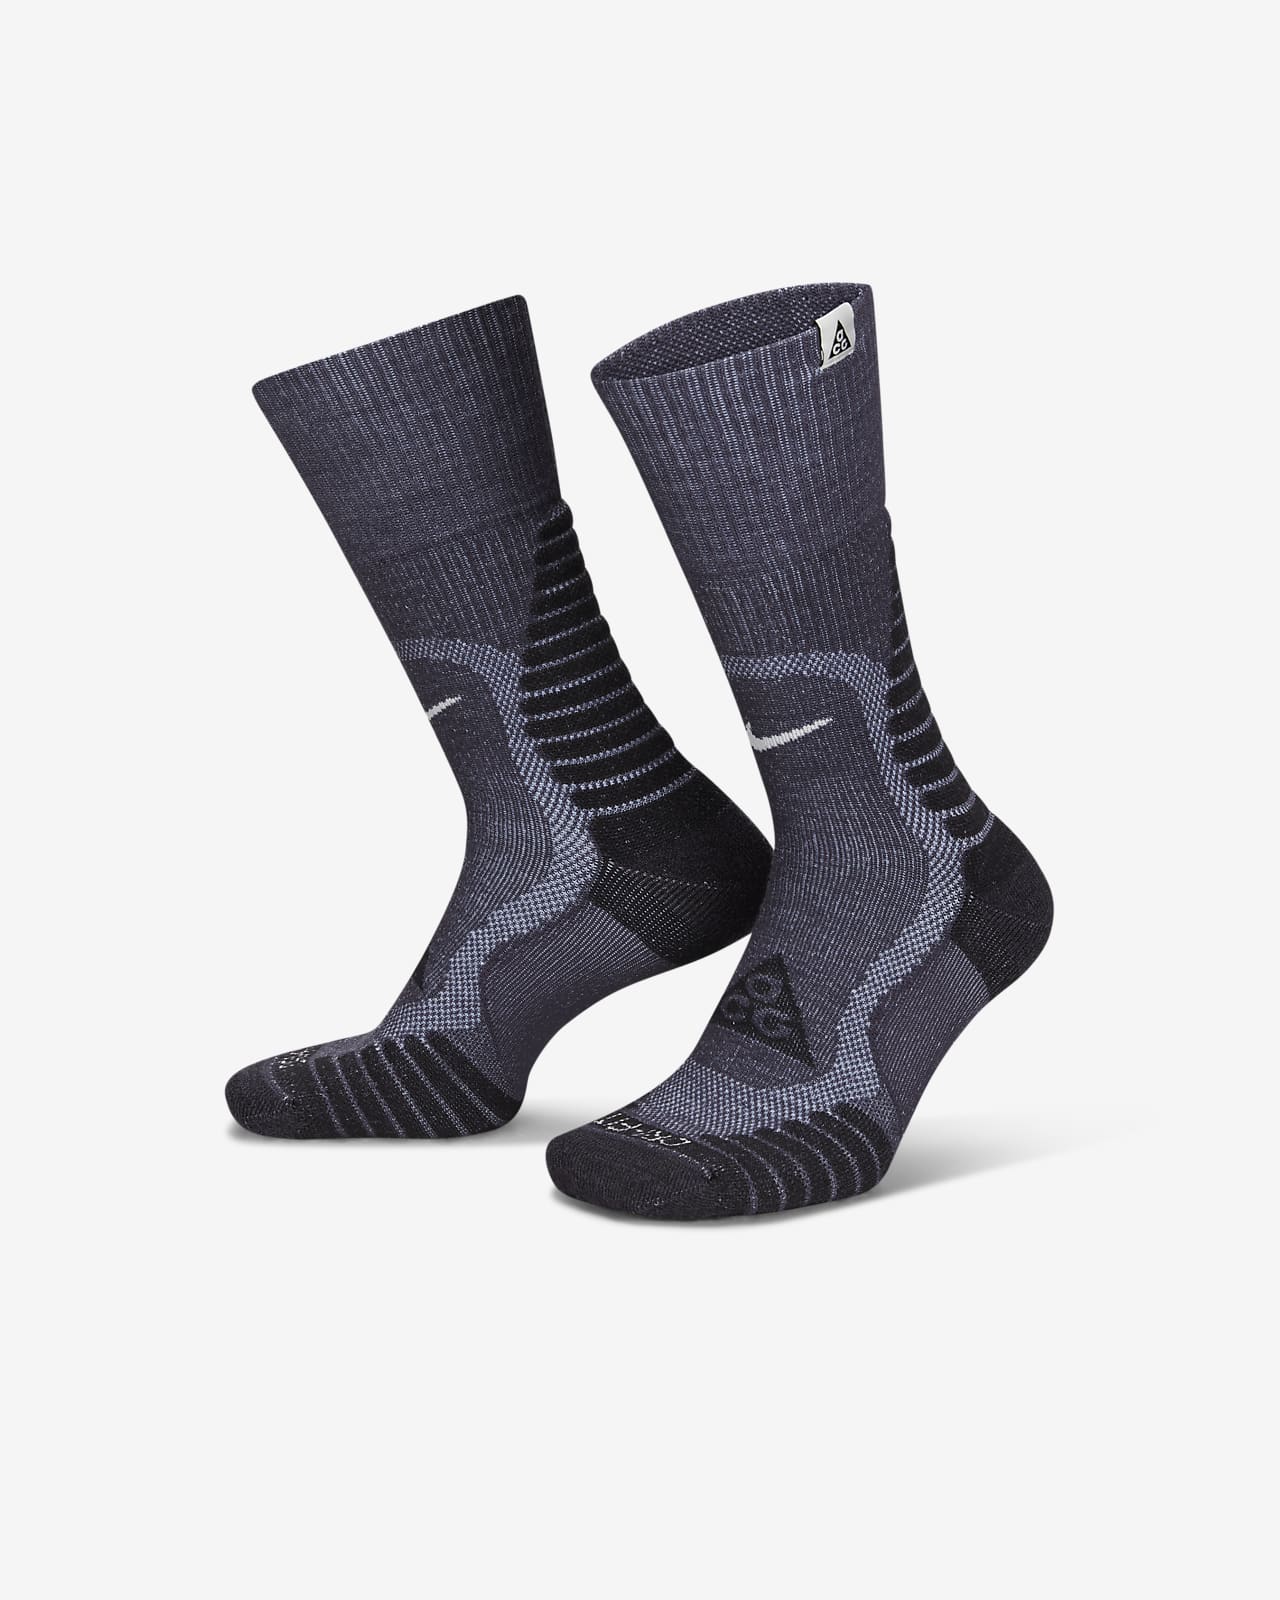 Calcetas acolchadas para el aire libre Nike ACG